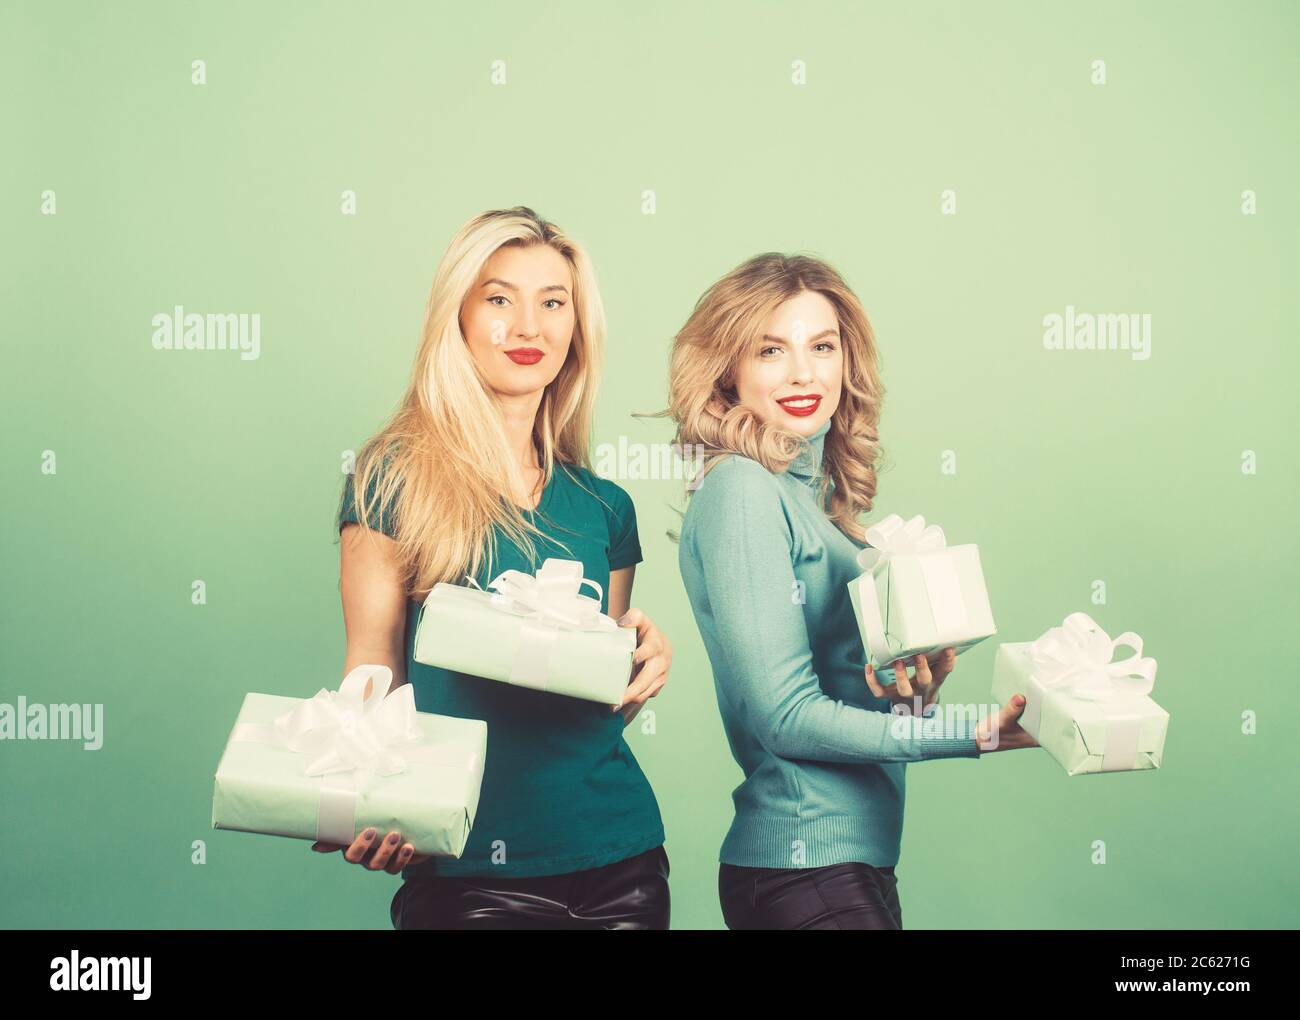 Ritratto di stile di vita di due ragazze amici che tengono regali brillanti compleanno, indossando abiti alla moda. Impazzire e fare facce divertenti. Foto Stock